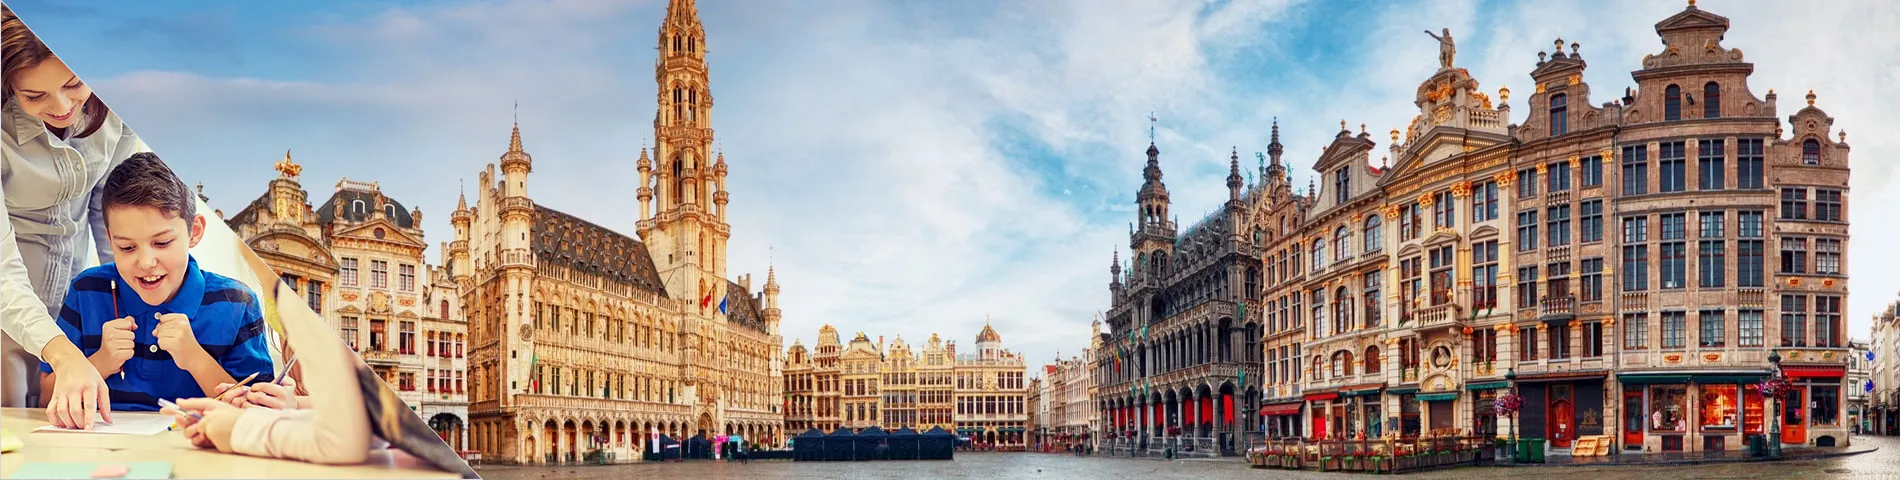 Брюссель - Голландский для Учителей